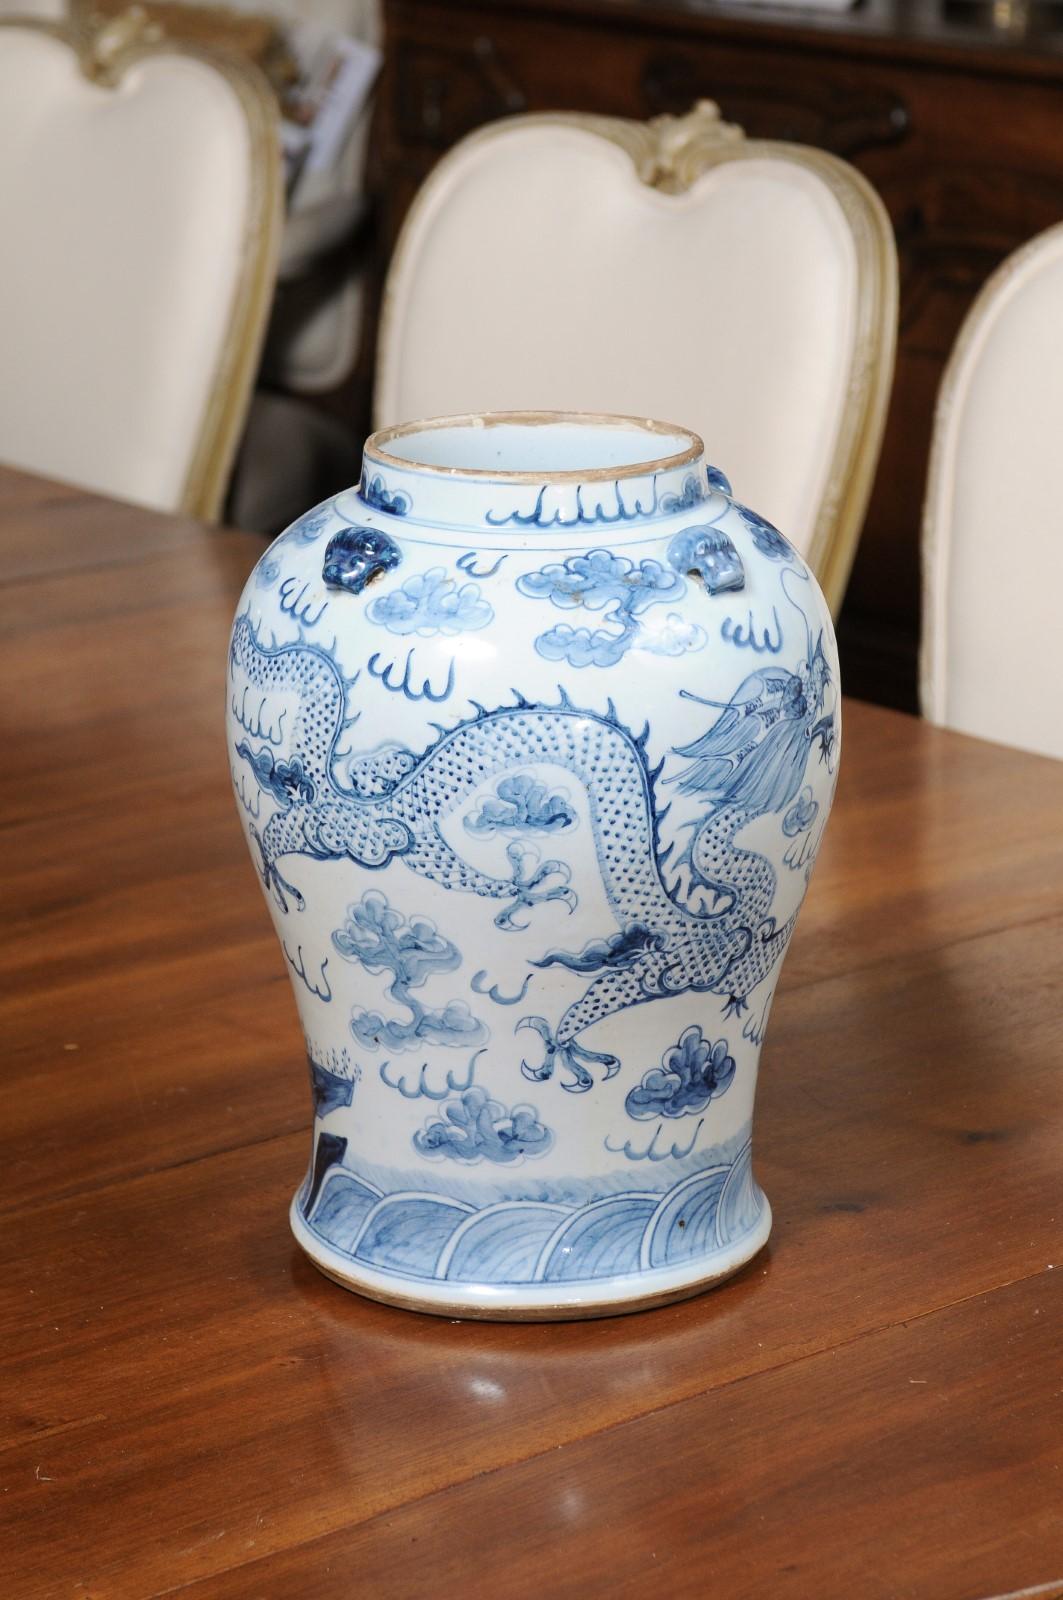 Eine chinesische Exportvase aus blau-weißem Porzellan aus dem 20. Jahrhundert mit Drachenmotiven. Diese blau-weiße Porzellanvase, die im 20. Jahrhundert in China hergestellt wurde, weist einen schön geschwungenen Körper auf, der mit Drachenmotiven